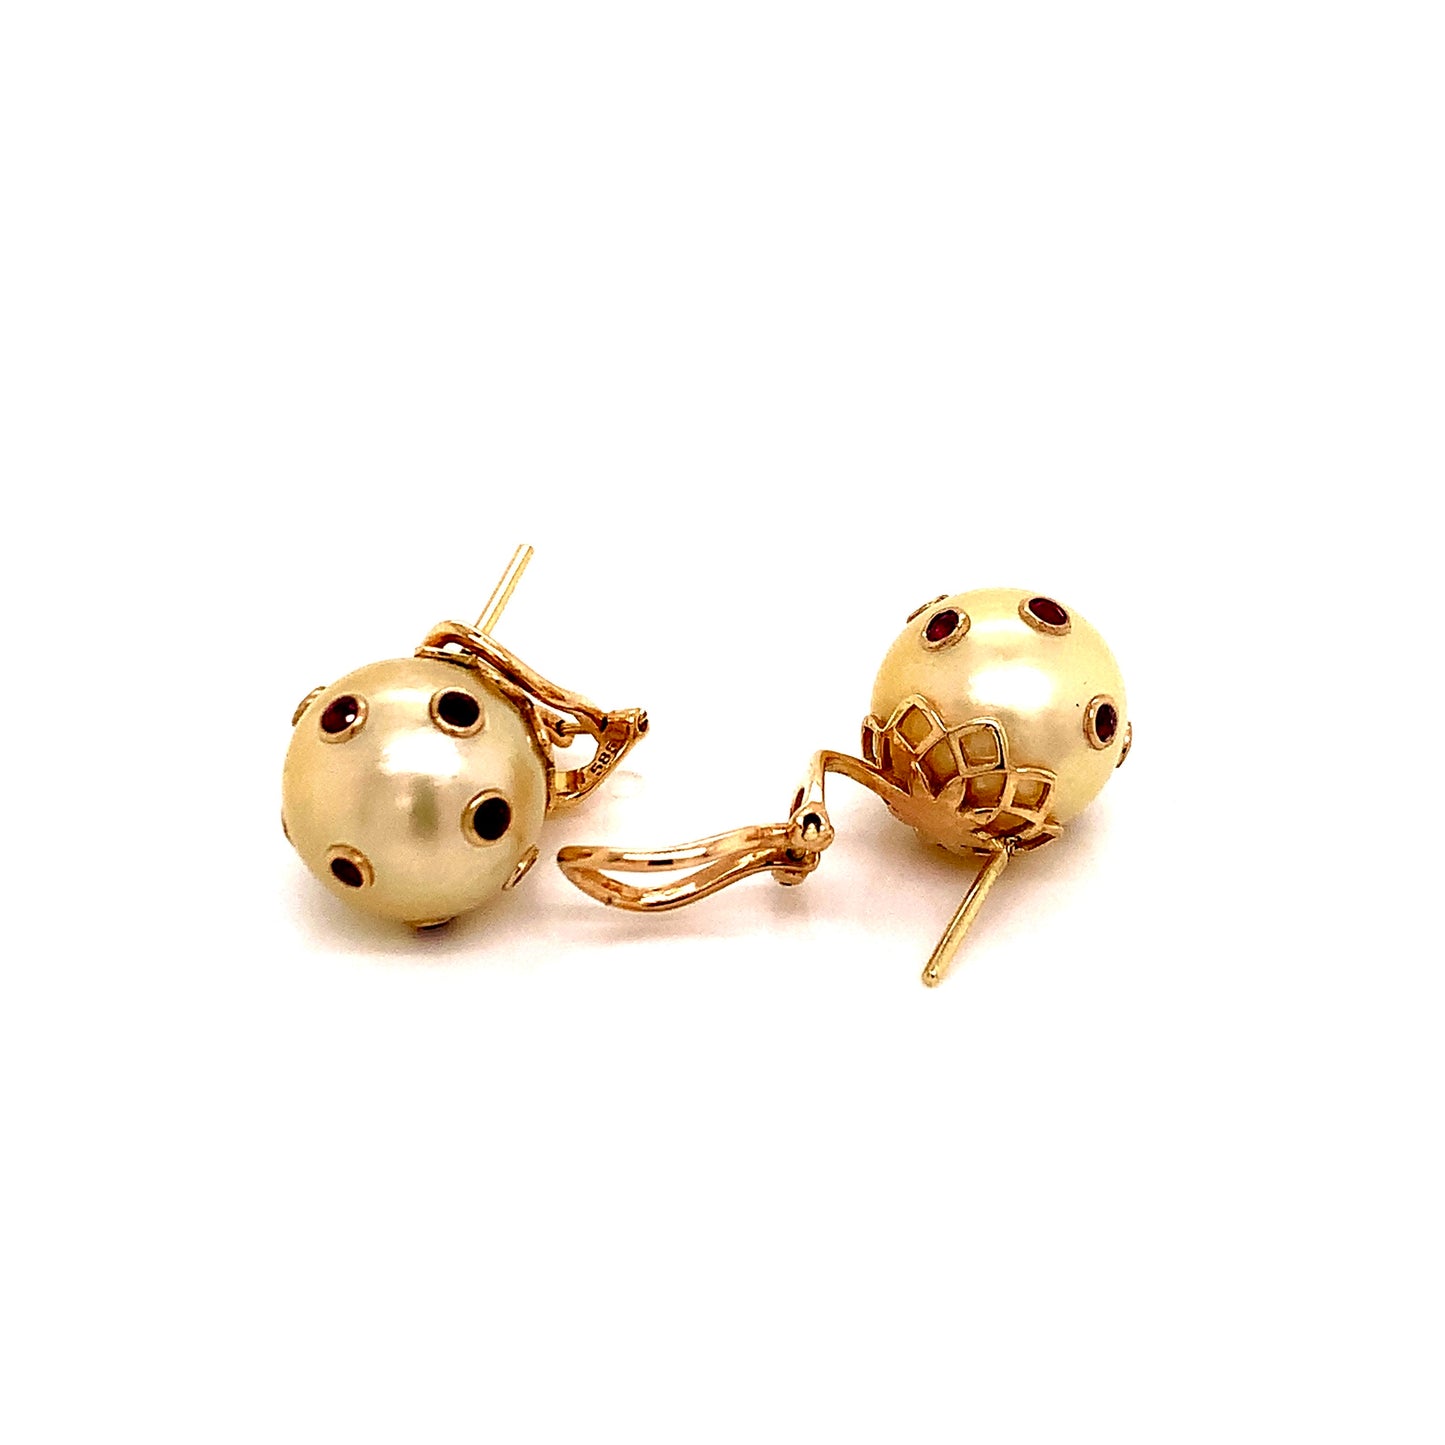 South Sea Pearl Ruby Earrings 14k Gold 0.27 CTW Certified 113513